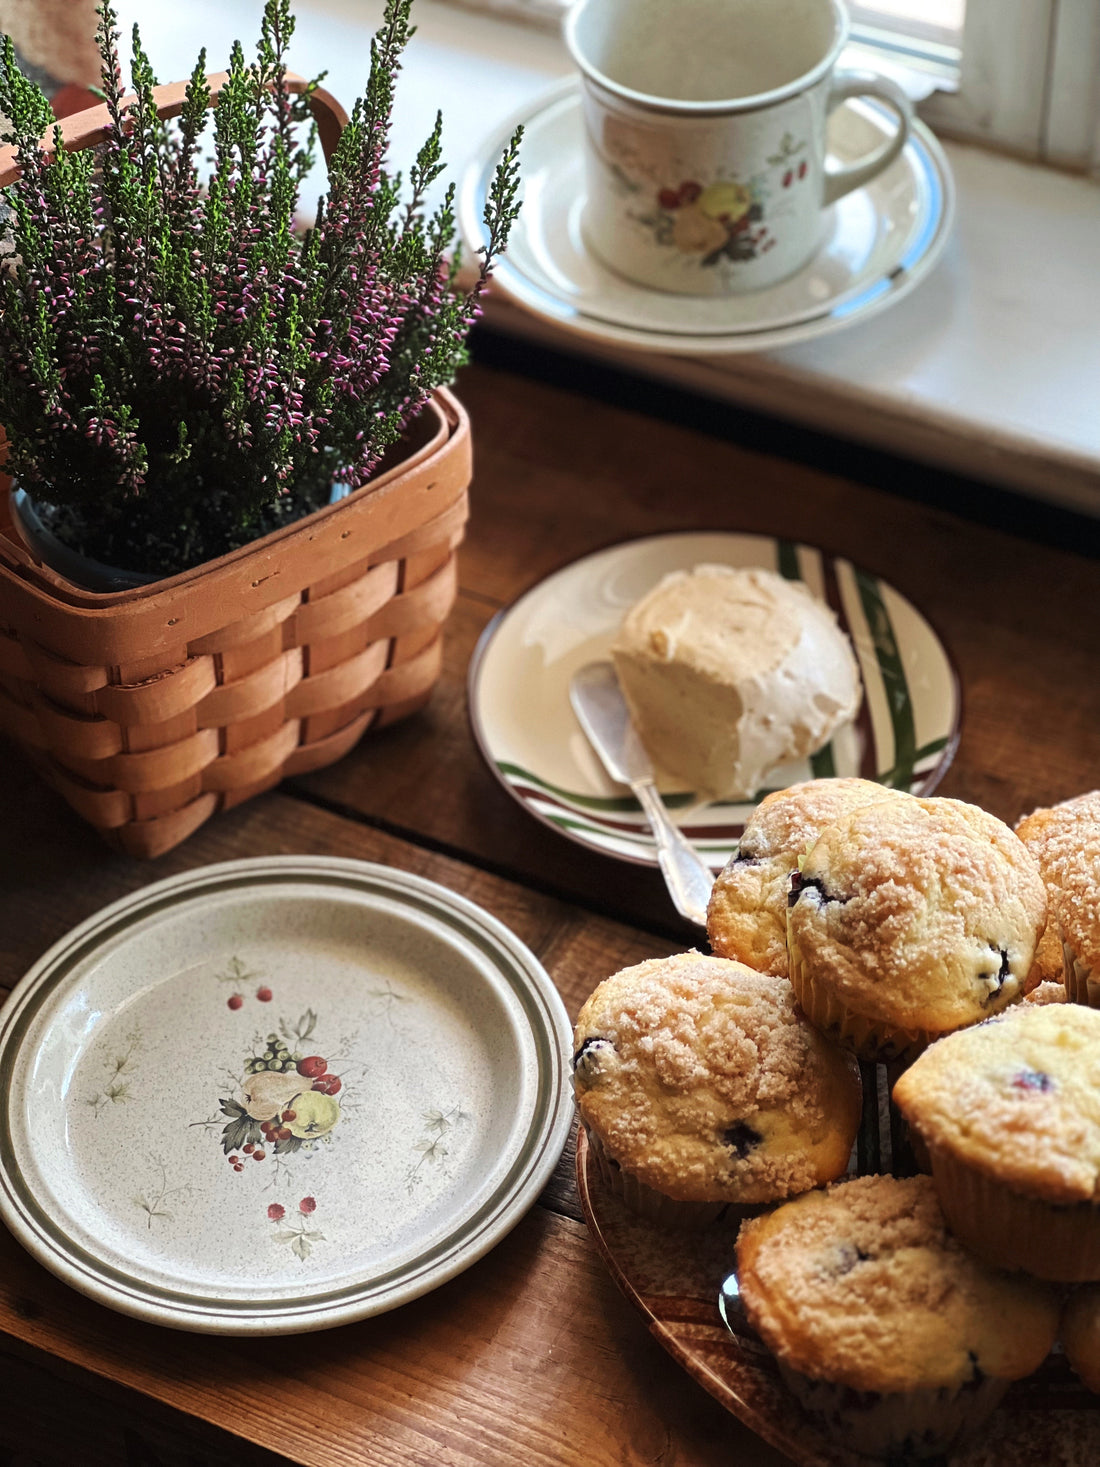 Classic Blueberry Muffins Recipe